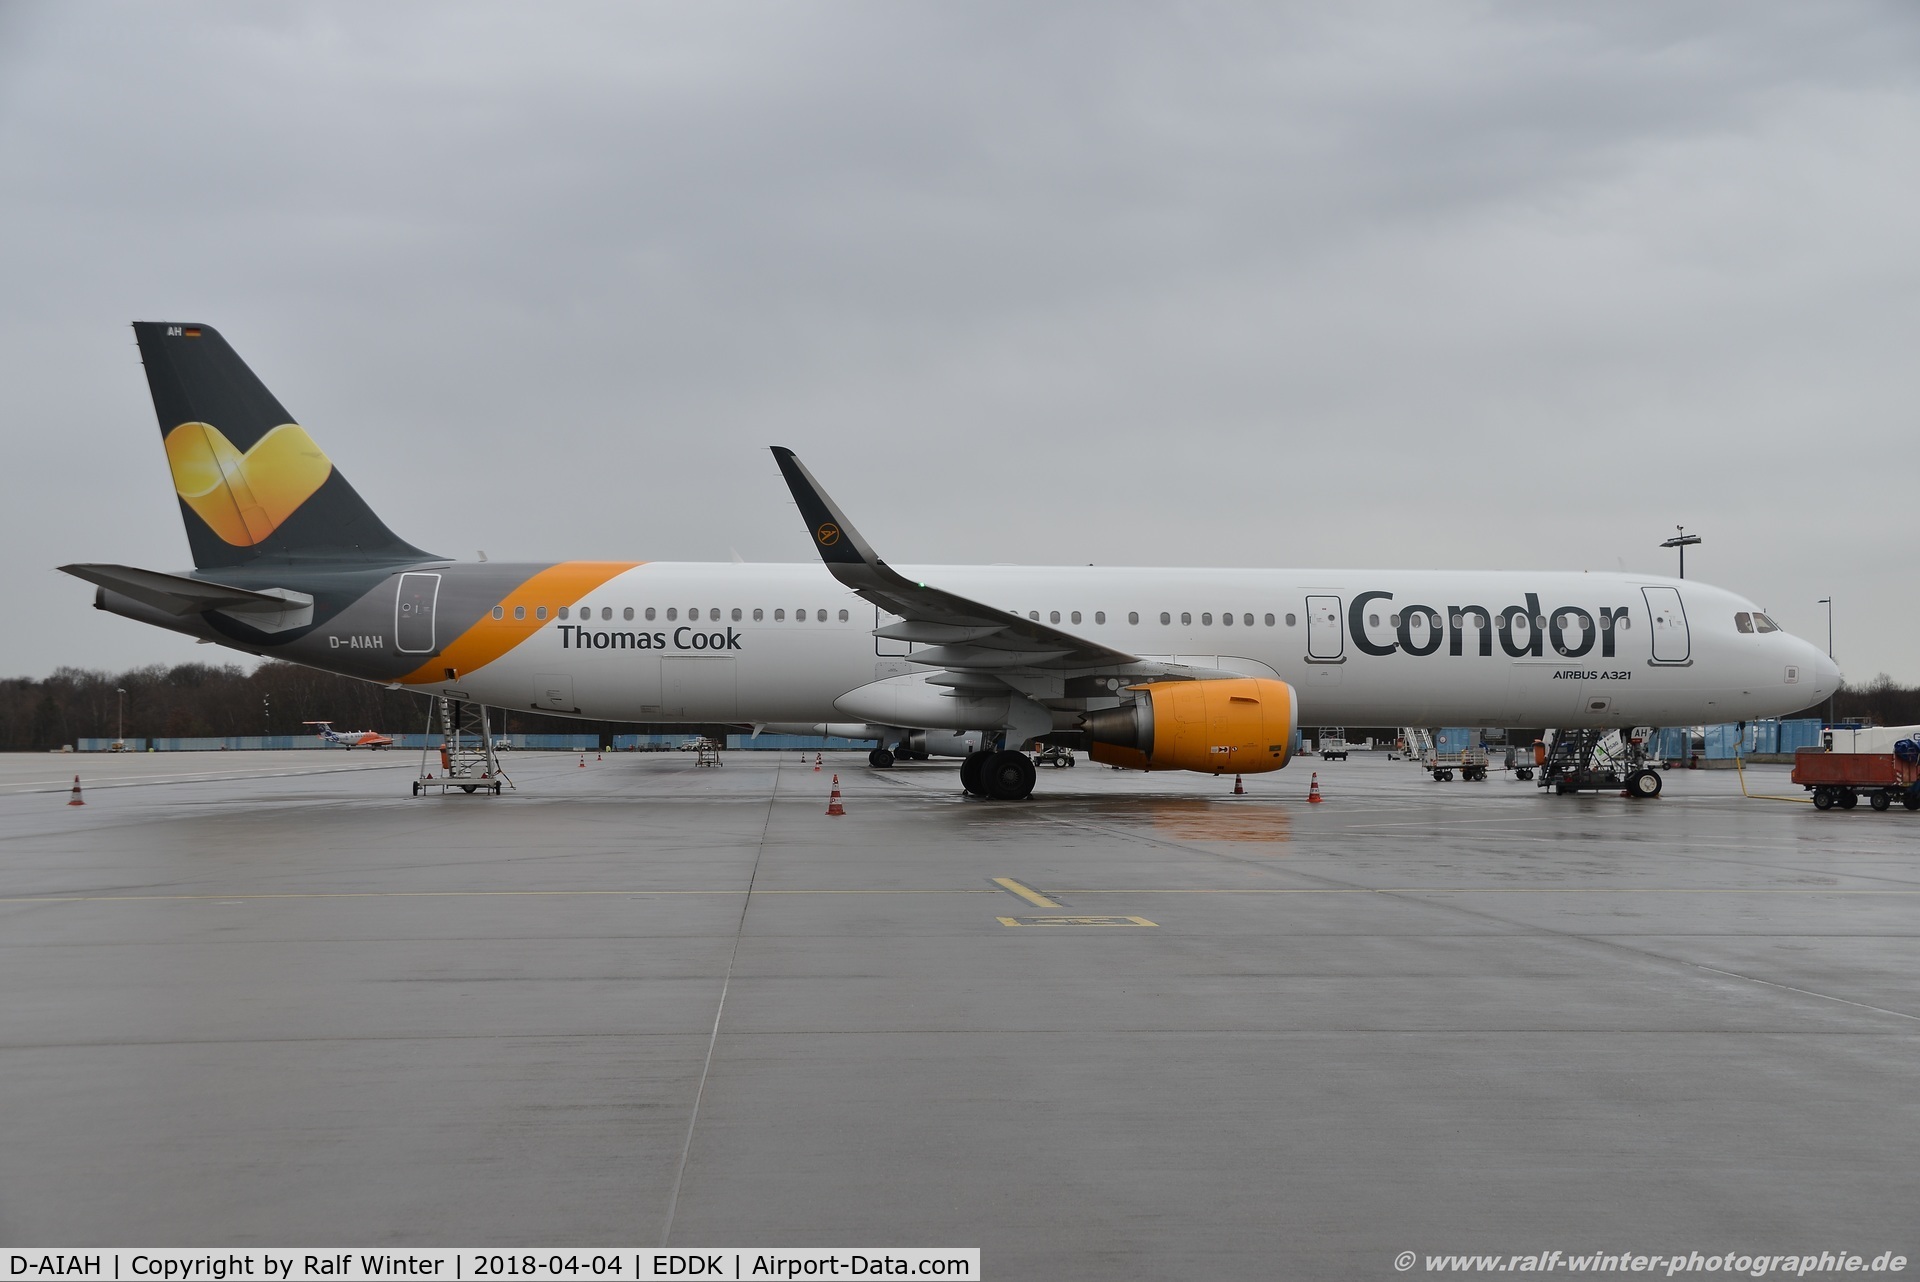 D-AIAH, 2015 Airbus A321-211 C/N 6615, Airbus A321-211 - DE CFG Condor - 6615 - D-AIAH - 04.04.2018 - CGN